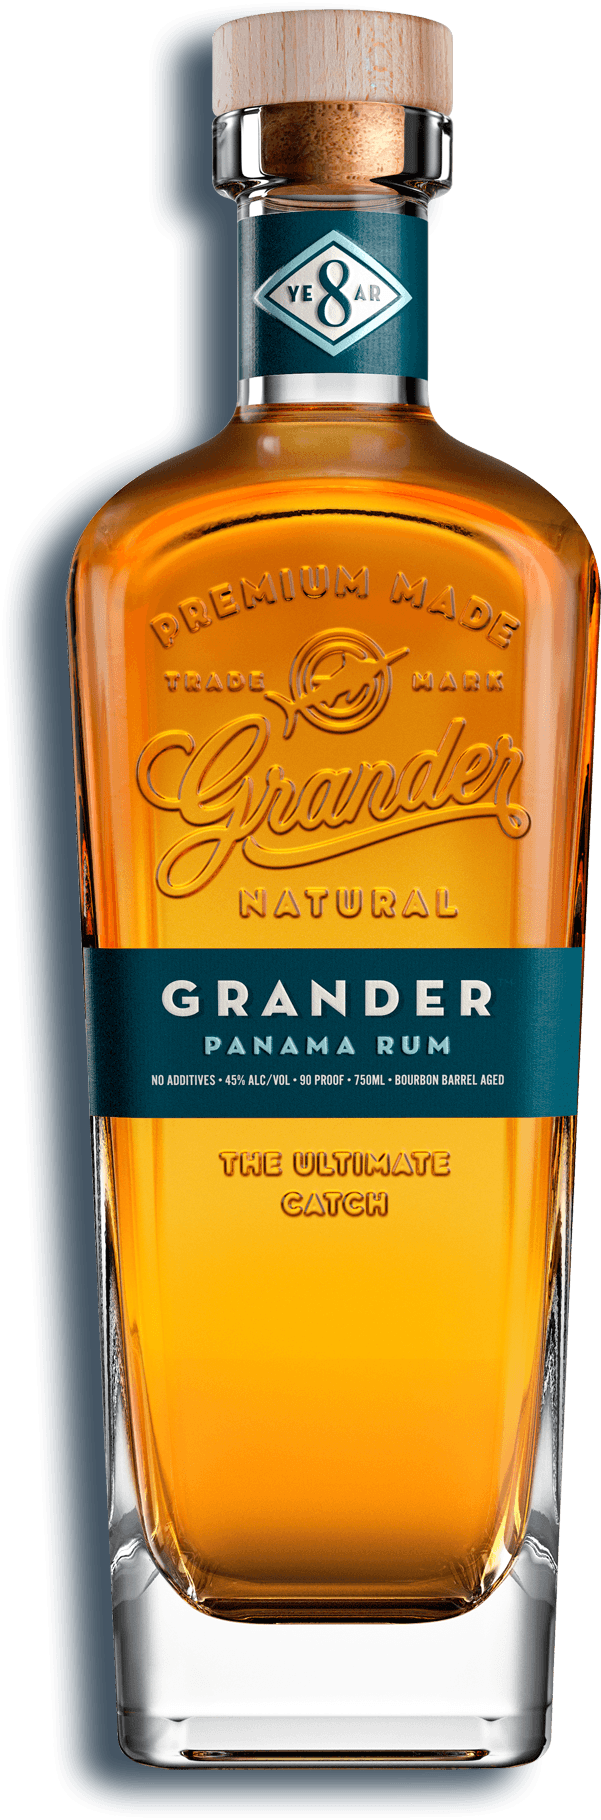 Grander Natural Panama Rum 8 Jahre, 45% Vol. 0,7 ltr.